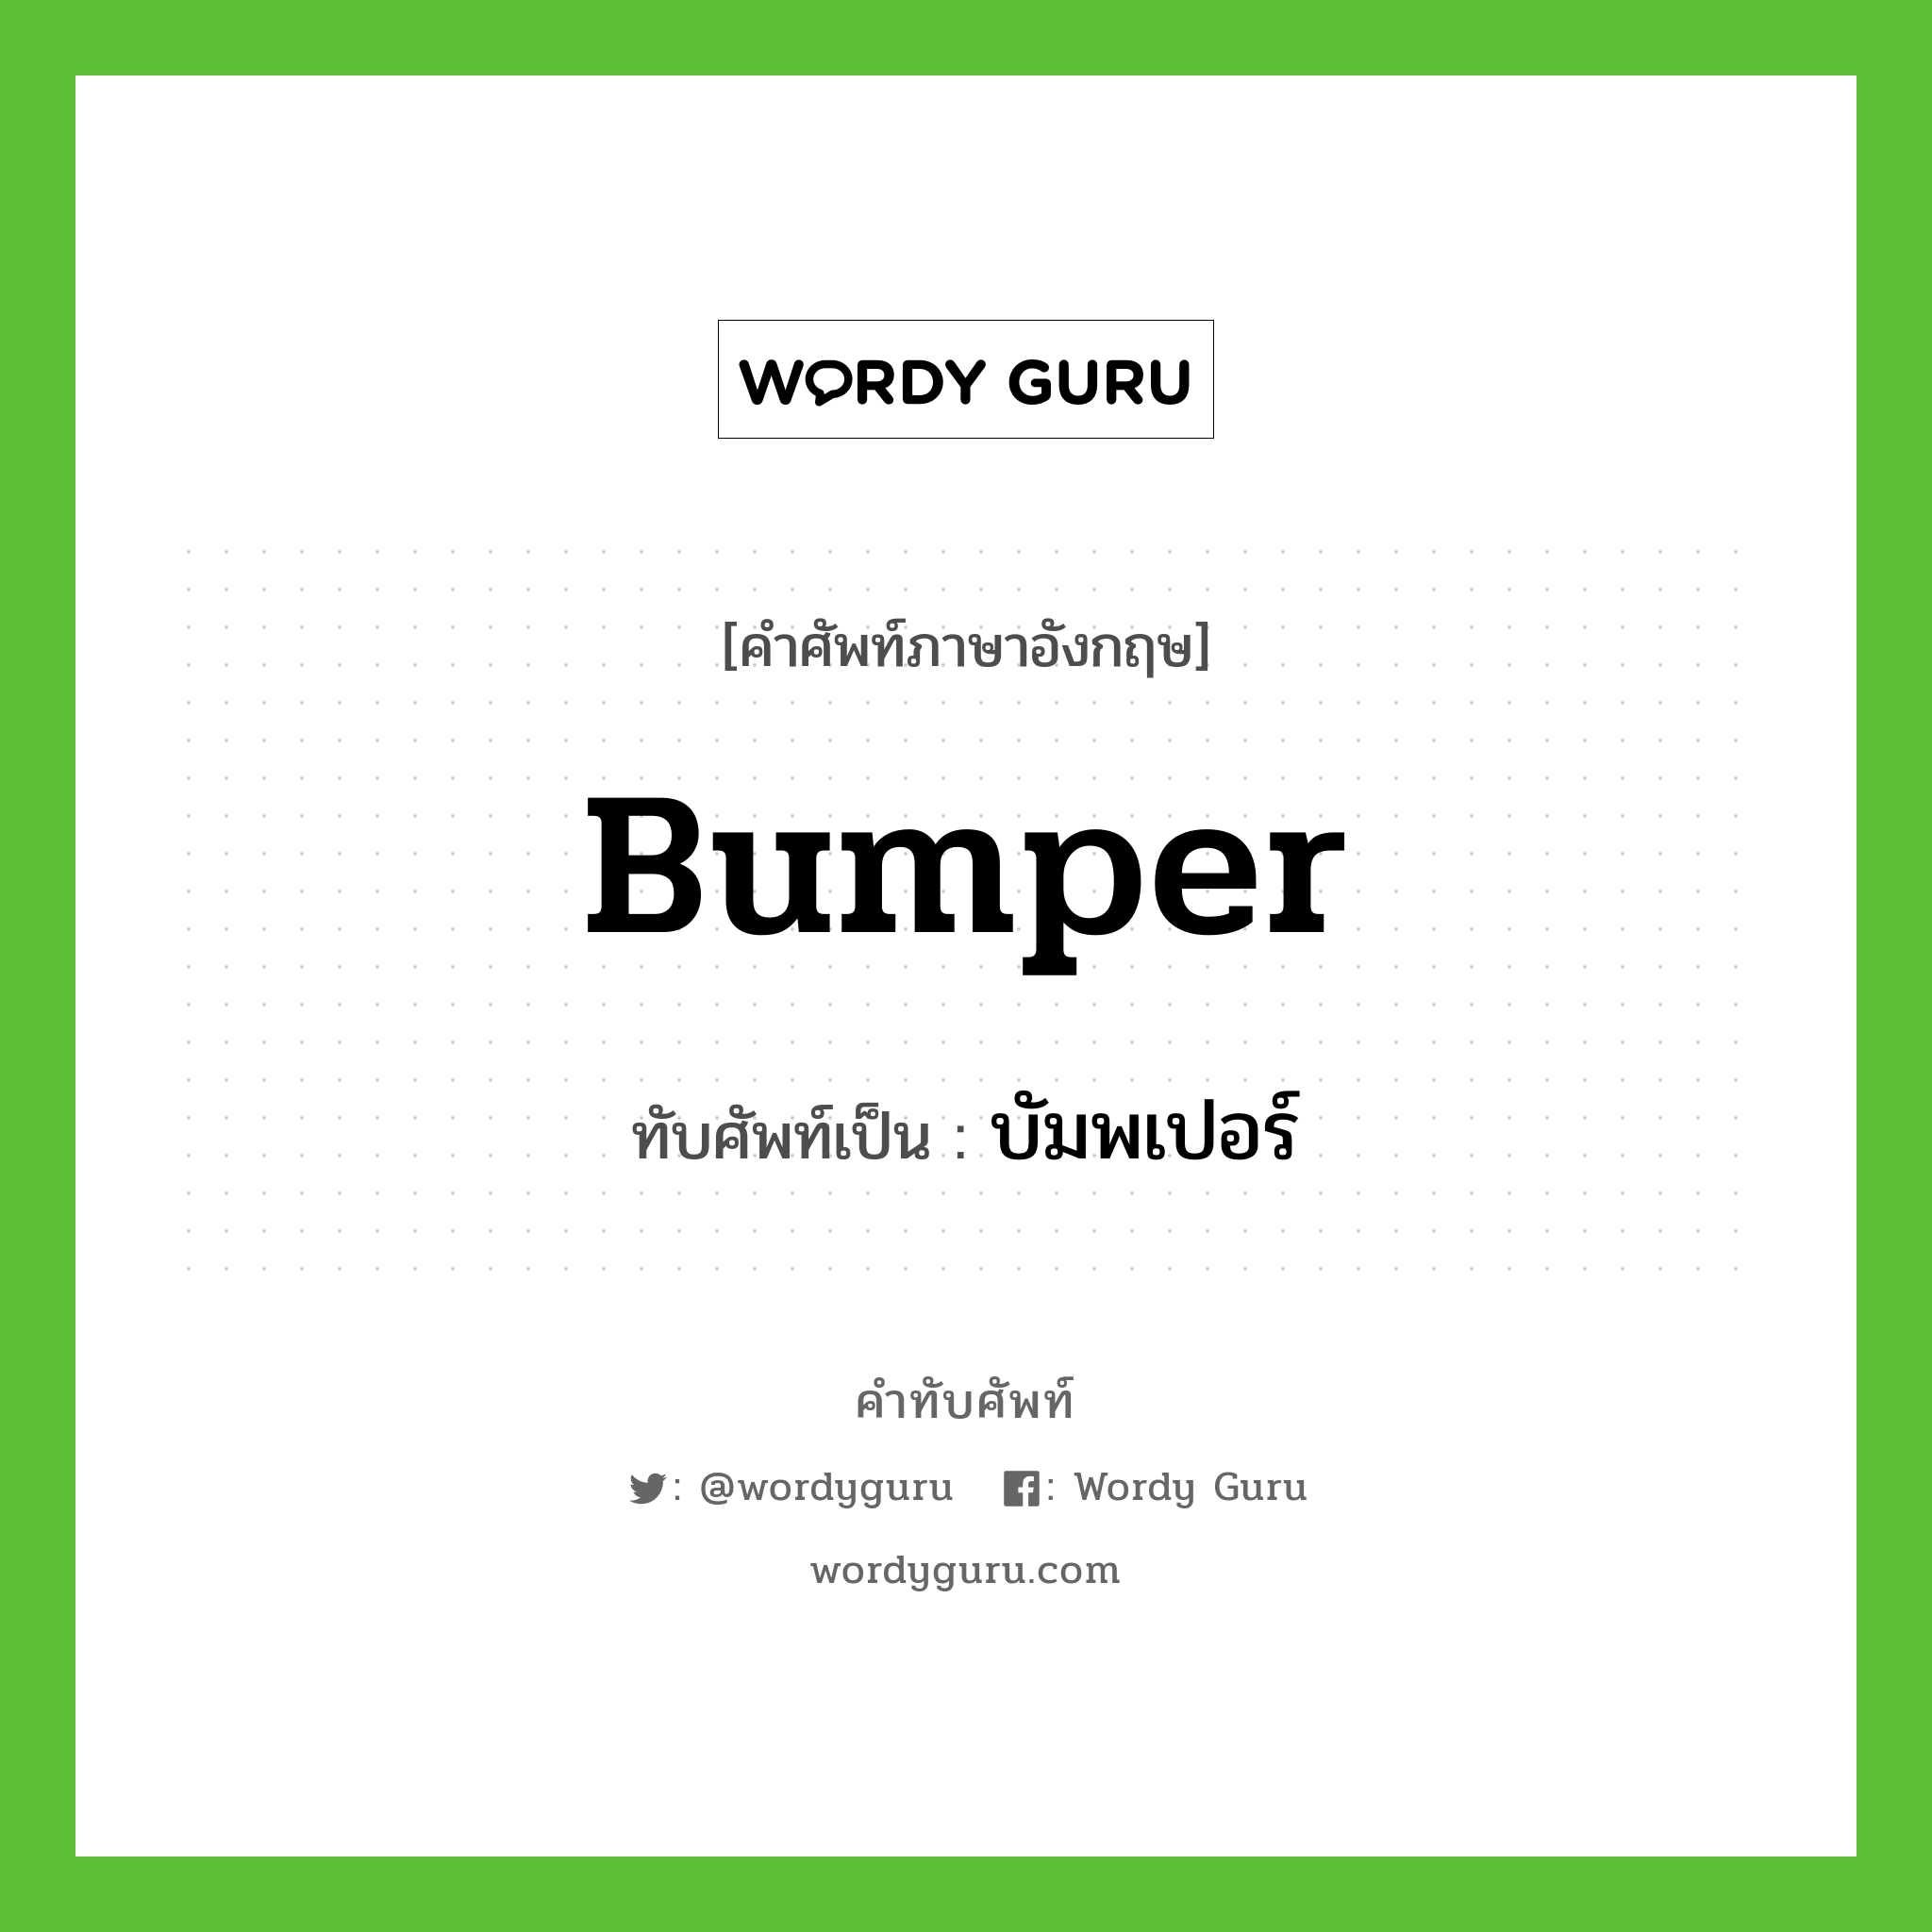 bumper เขียนเป็นคำไทยว่าอะไร?, คำศัพท์ภาษาอังกฤษ bumper ทับศัพท์เป็น บัมพเปอร์